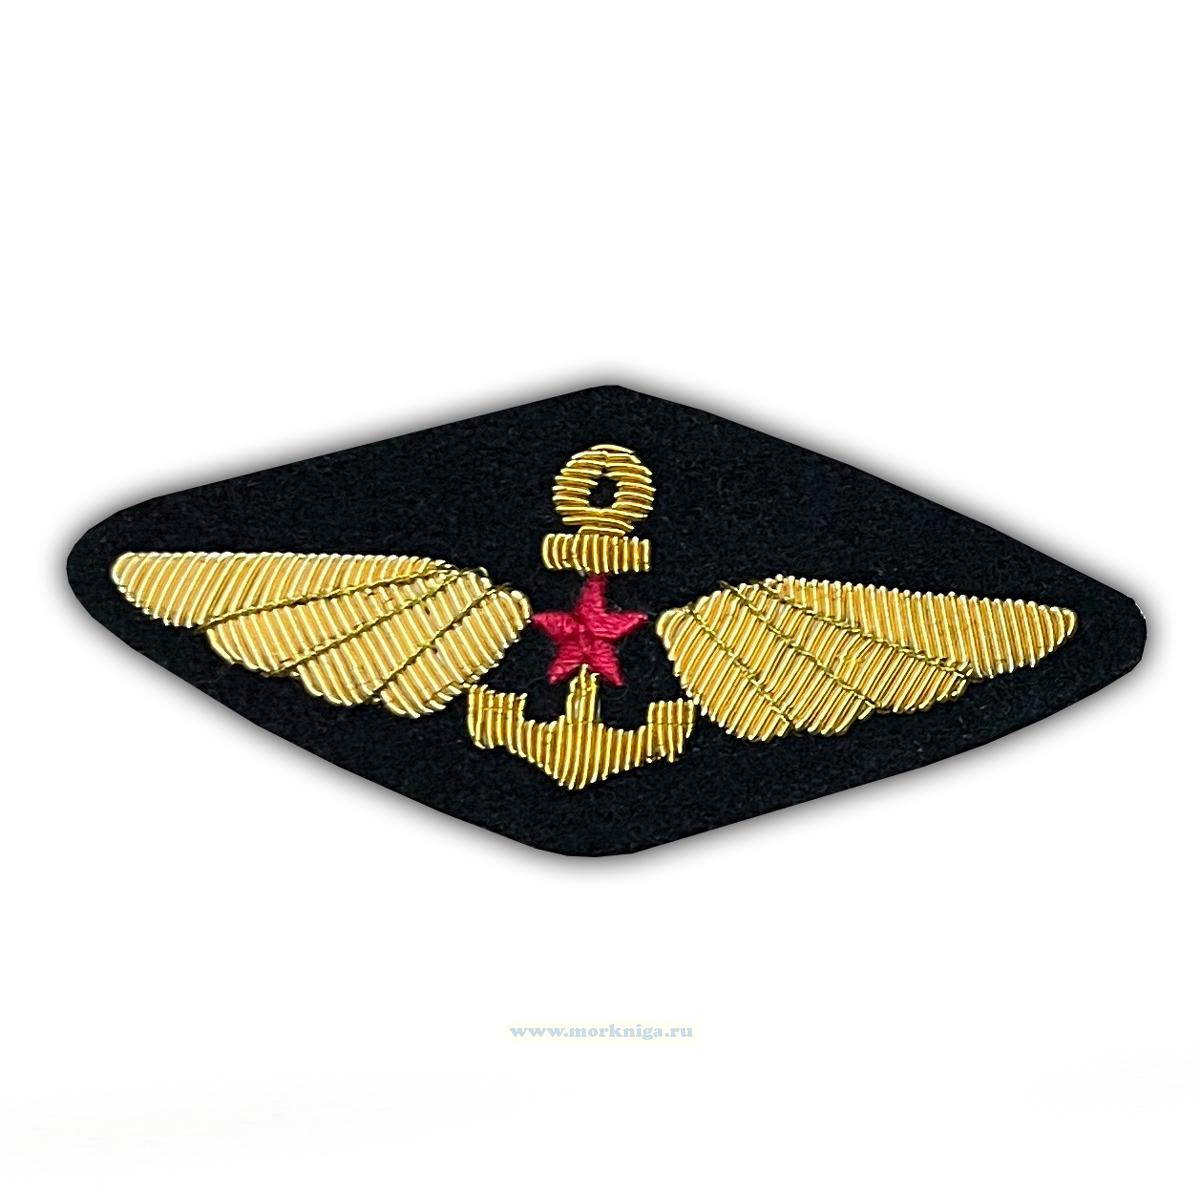 Нагрудный знак Летчика палубной авиации ВМФ СССР (золотой)